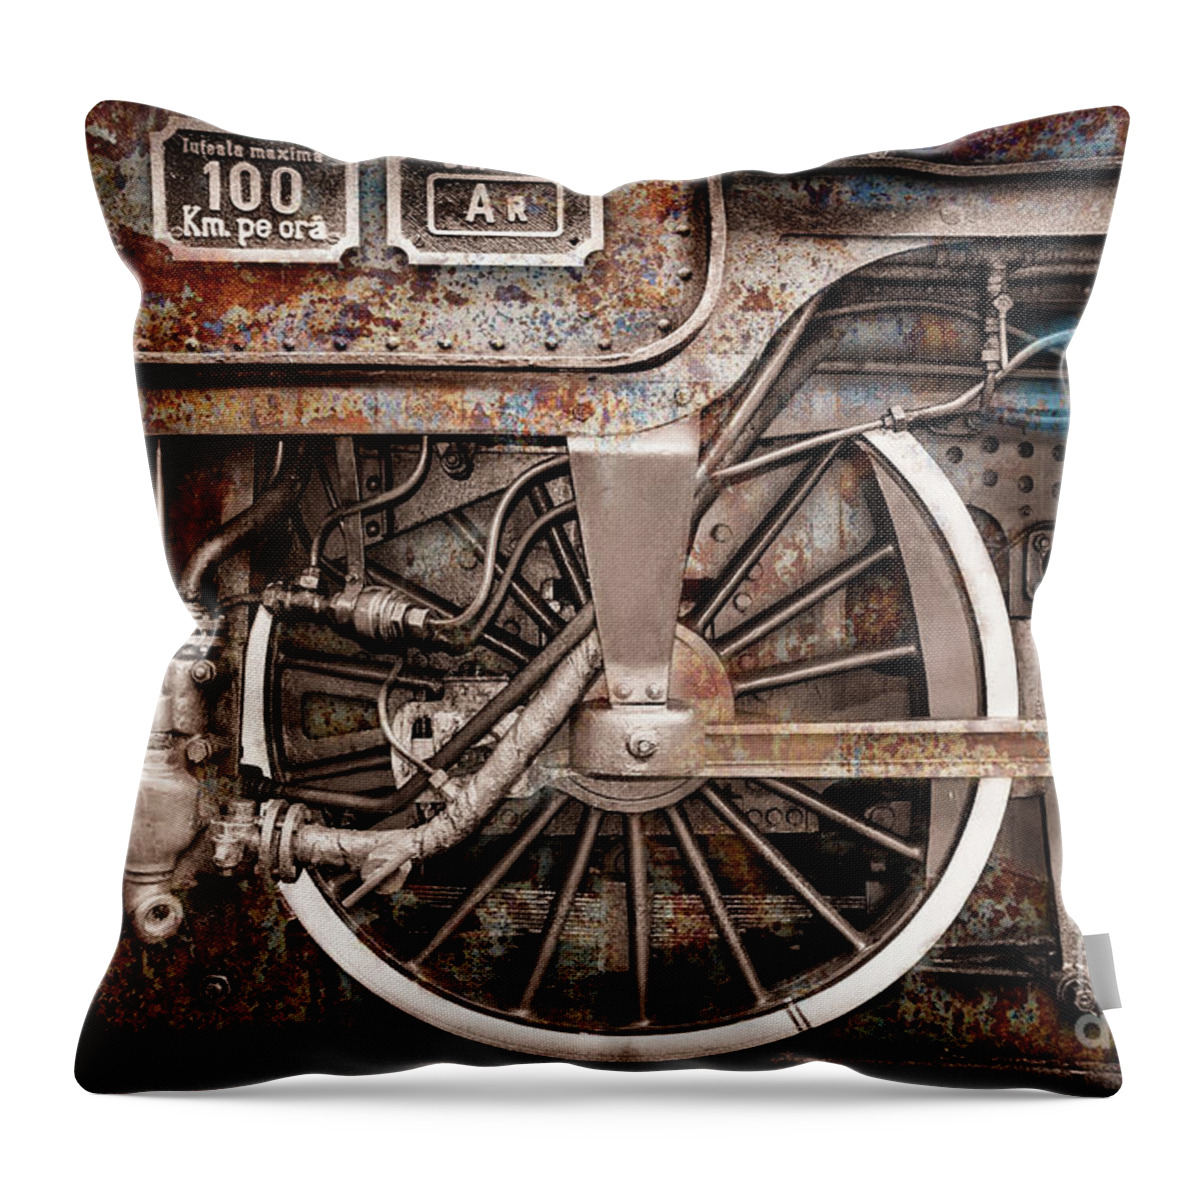 Rail Wheel Throw Pillow featuring the photograph Rail Wheel Grunge Detail, Steam Locomotive 06 by Daliana Pacuraru